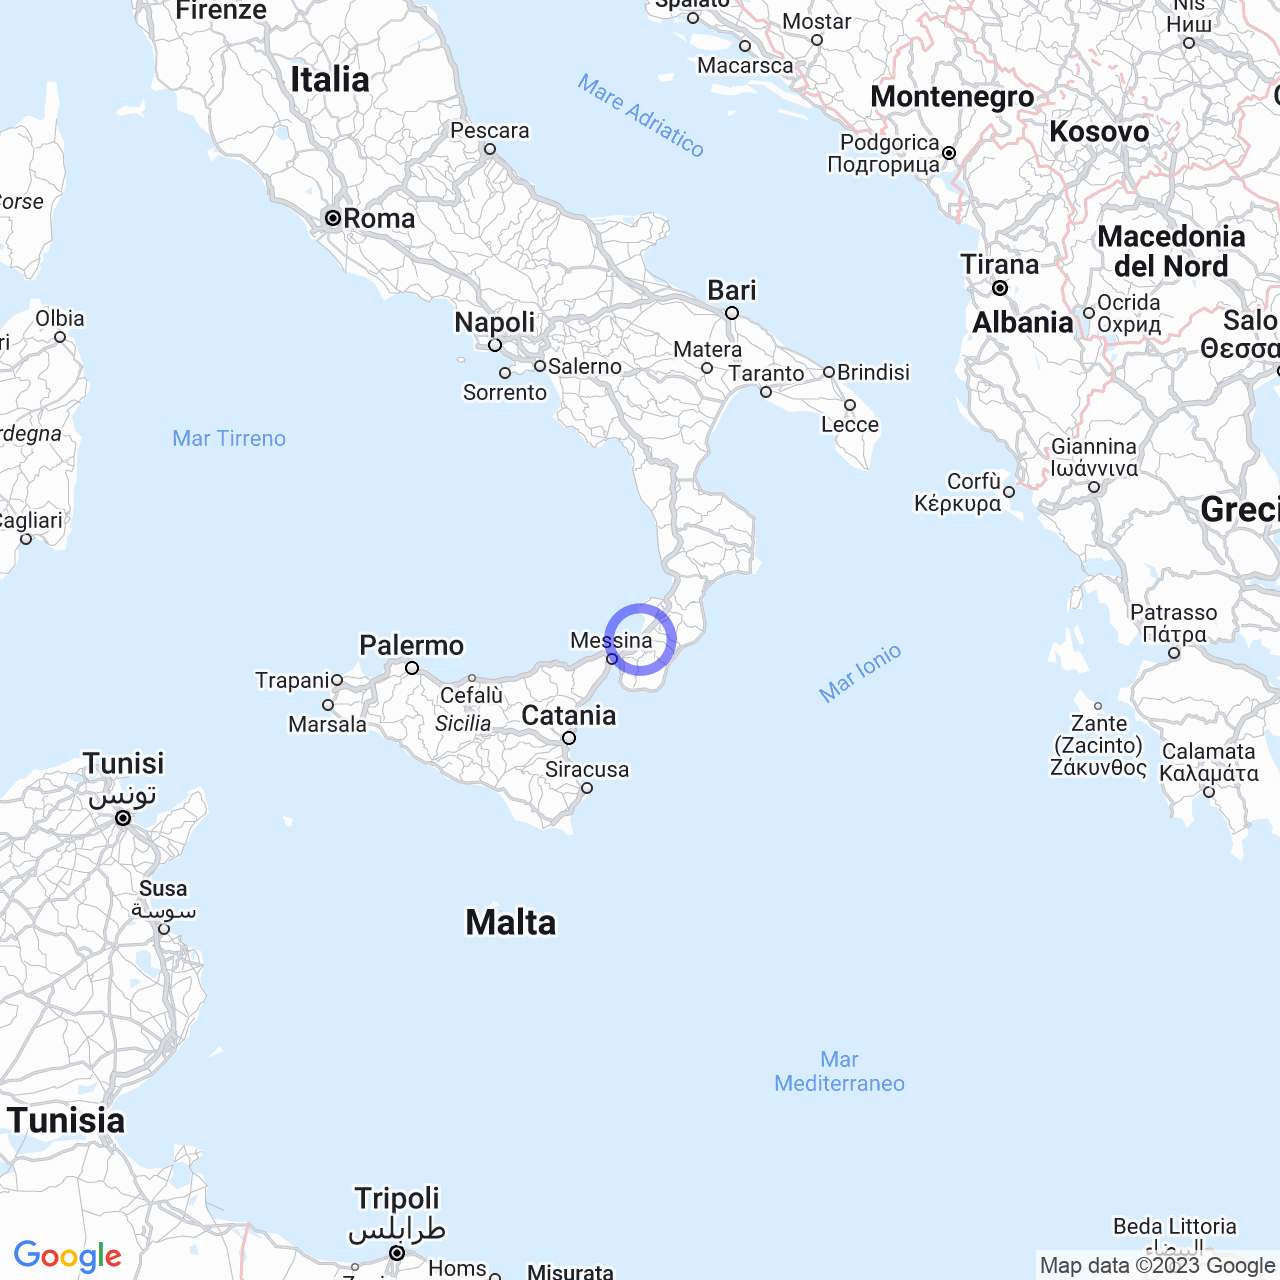 Il terremoto di Messina del 1908: una catastrofe senza precedenti.